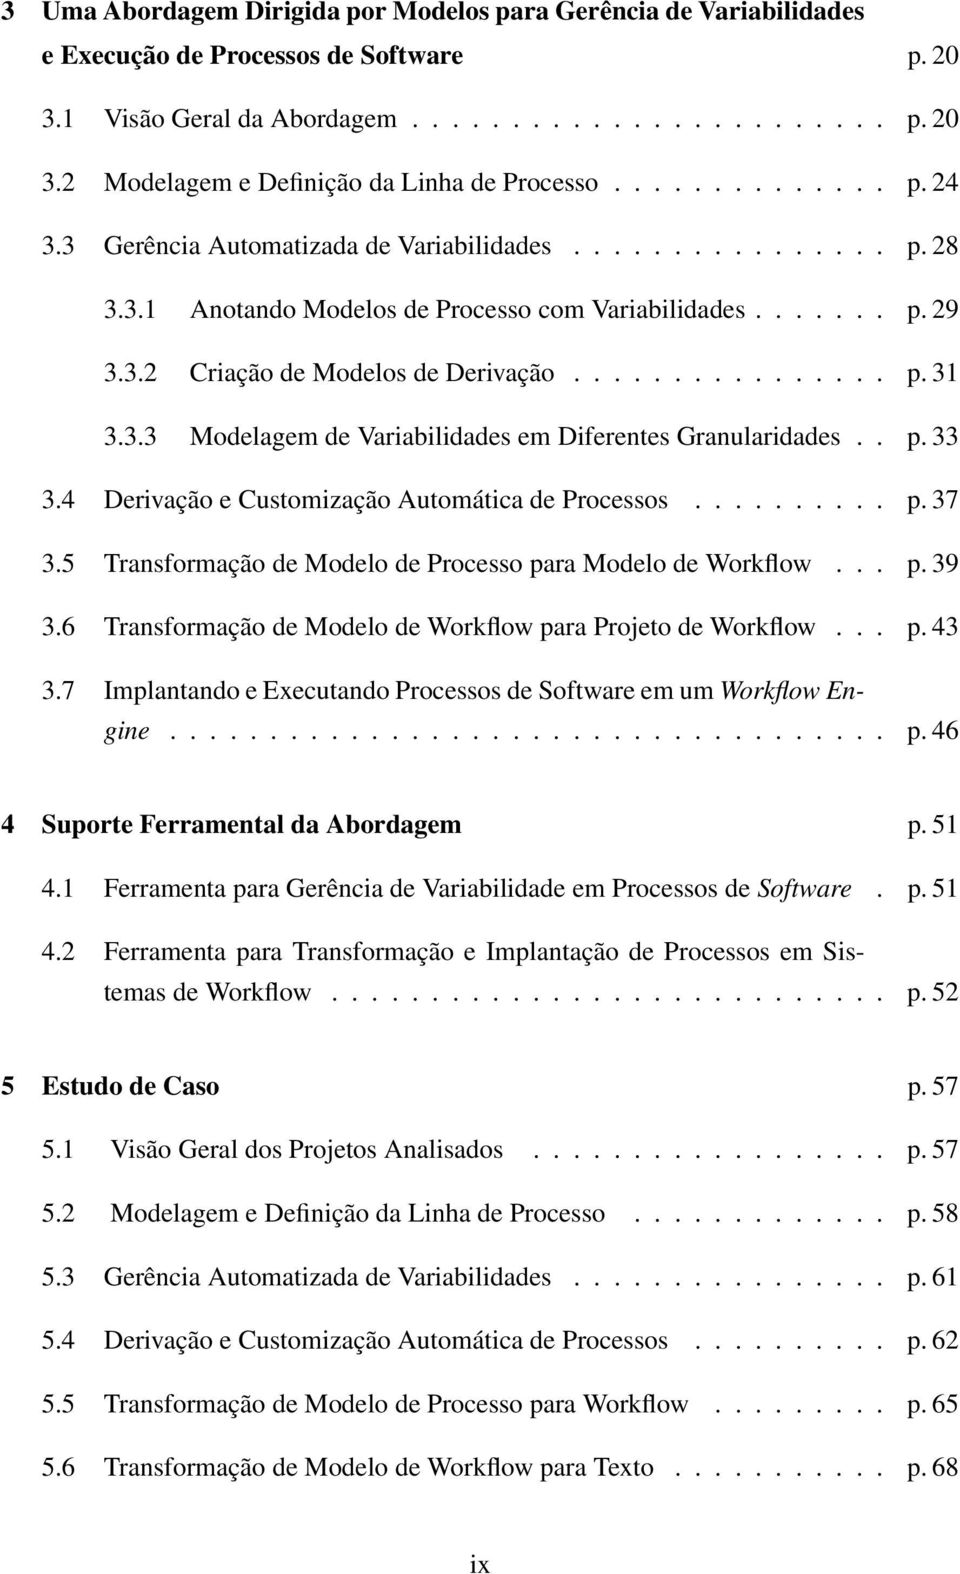 3.3 Modelagem de Variabilidades em Diferentes Granularidades.. p. 33 3.4 Derivação e Customização Automática de Processos.......... p. 37 3.